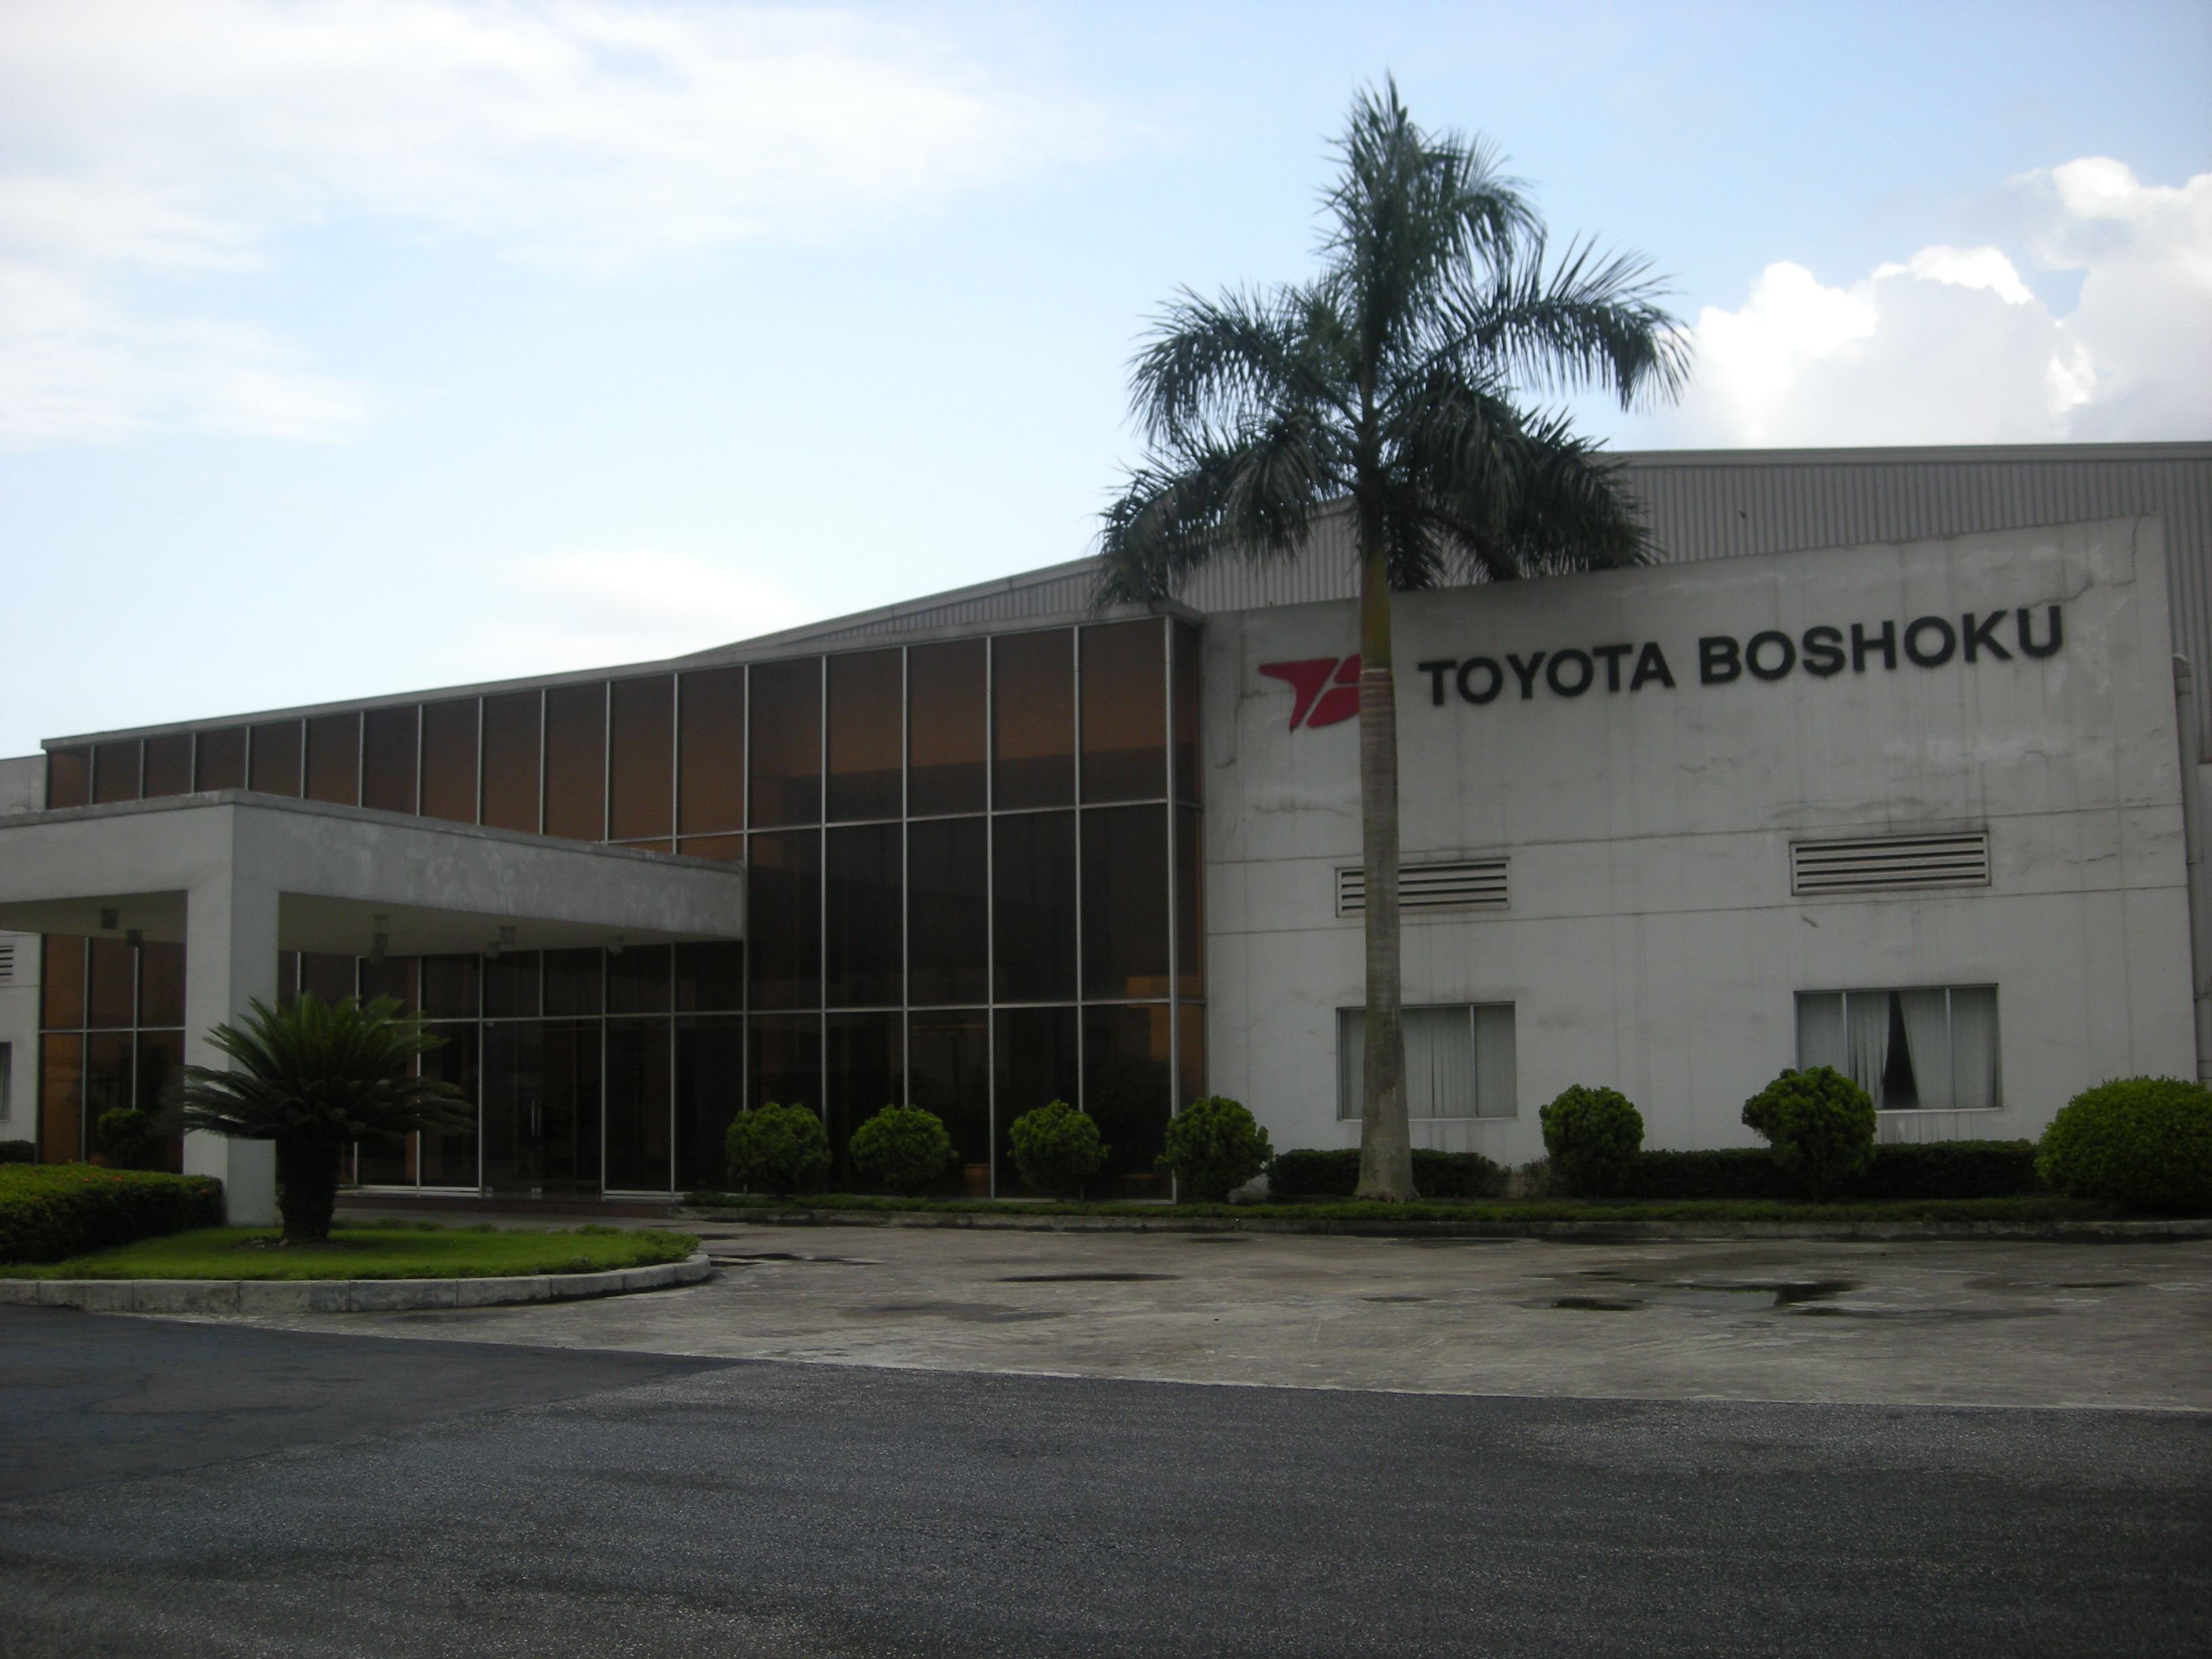 Toyota Boshoku factory